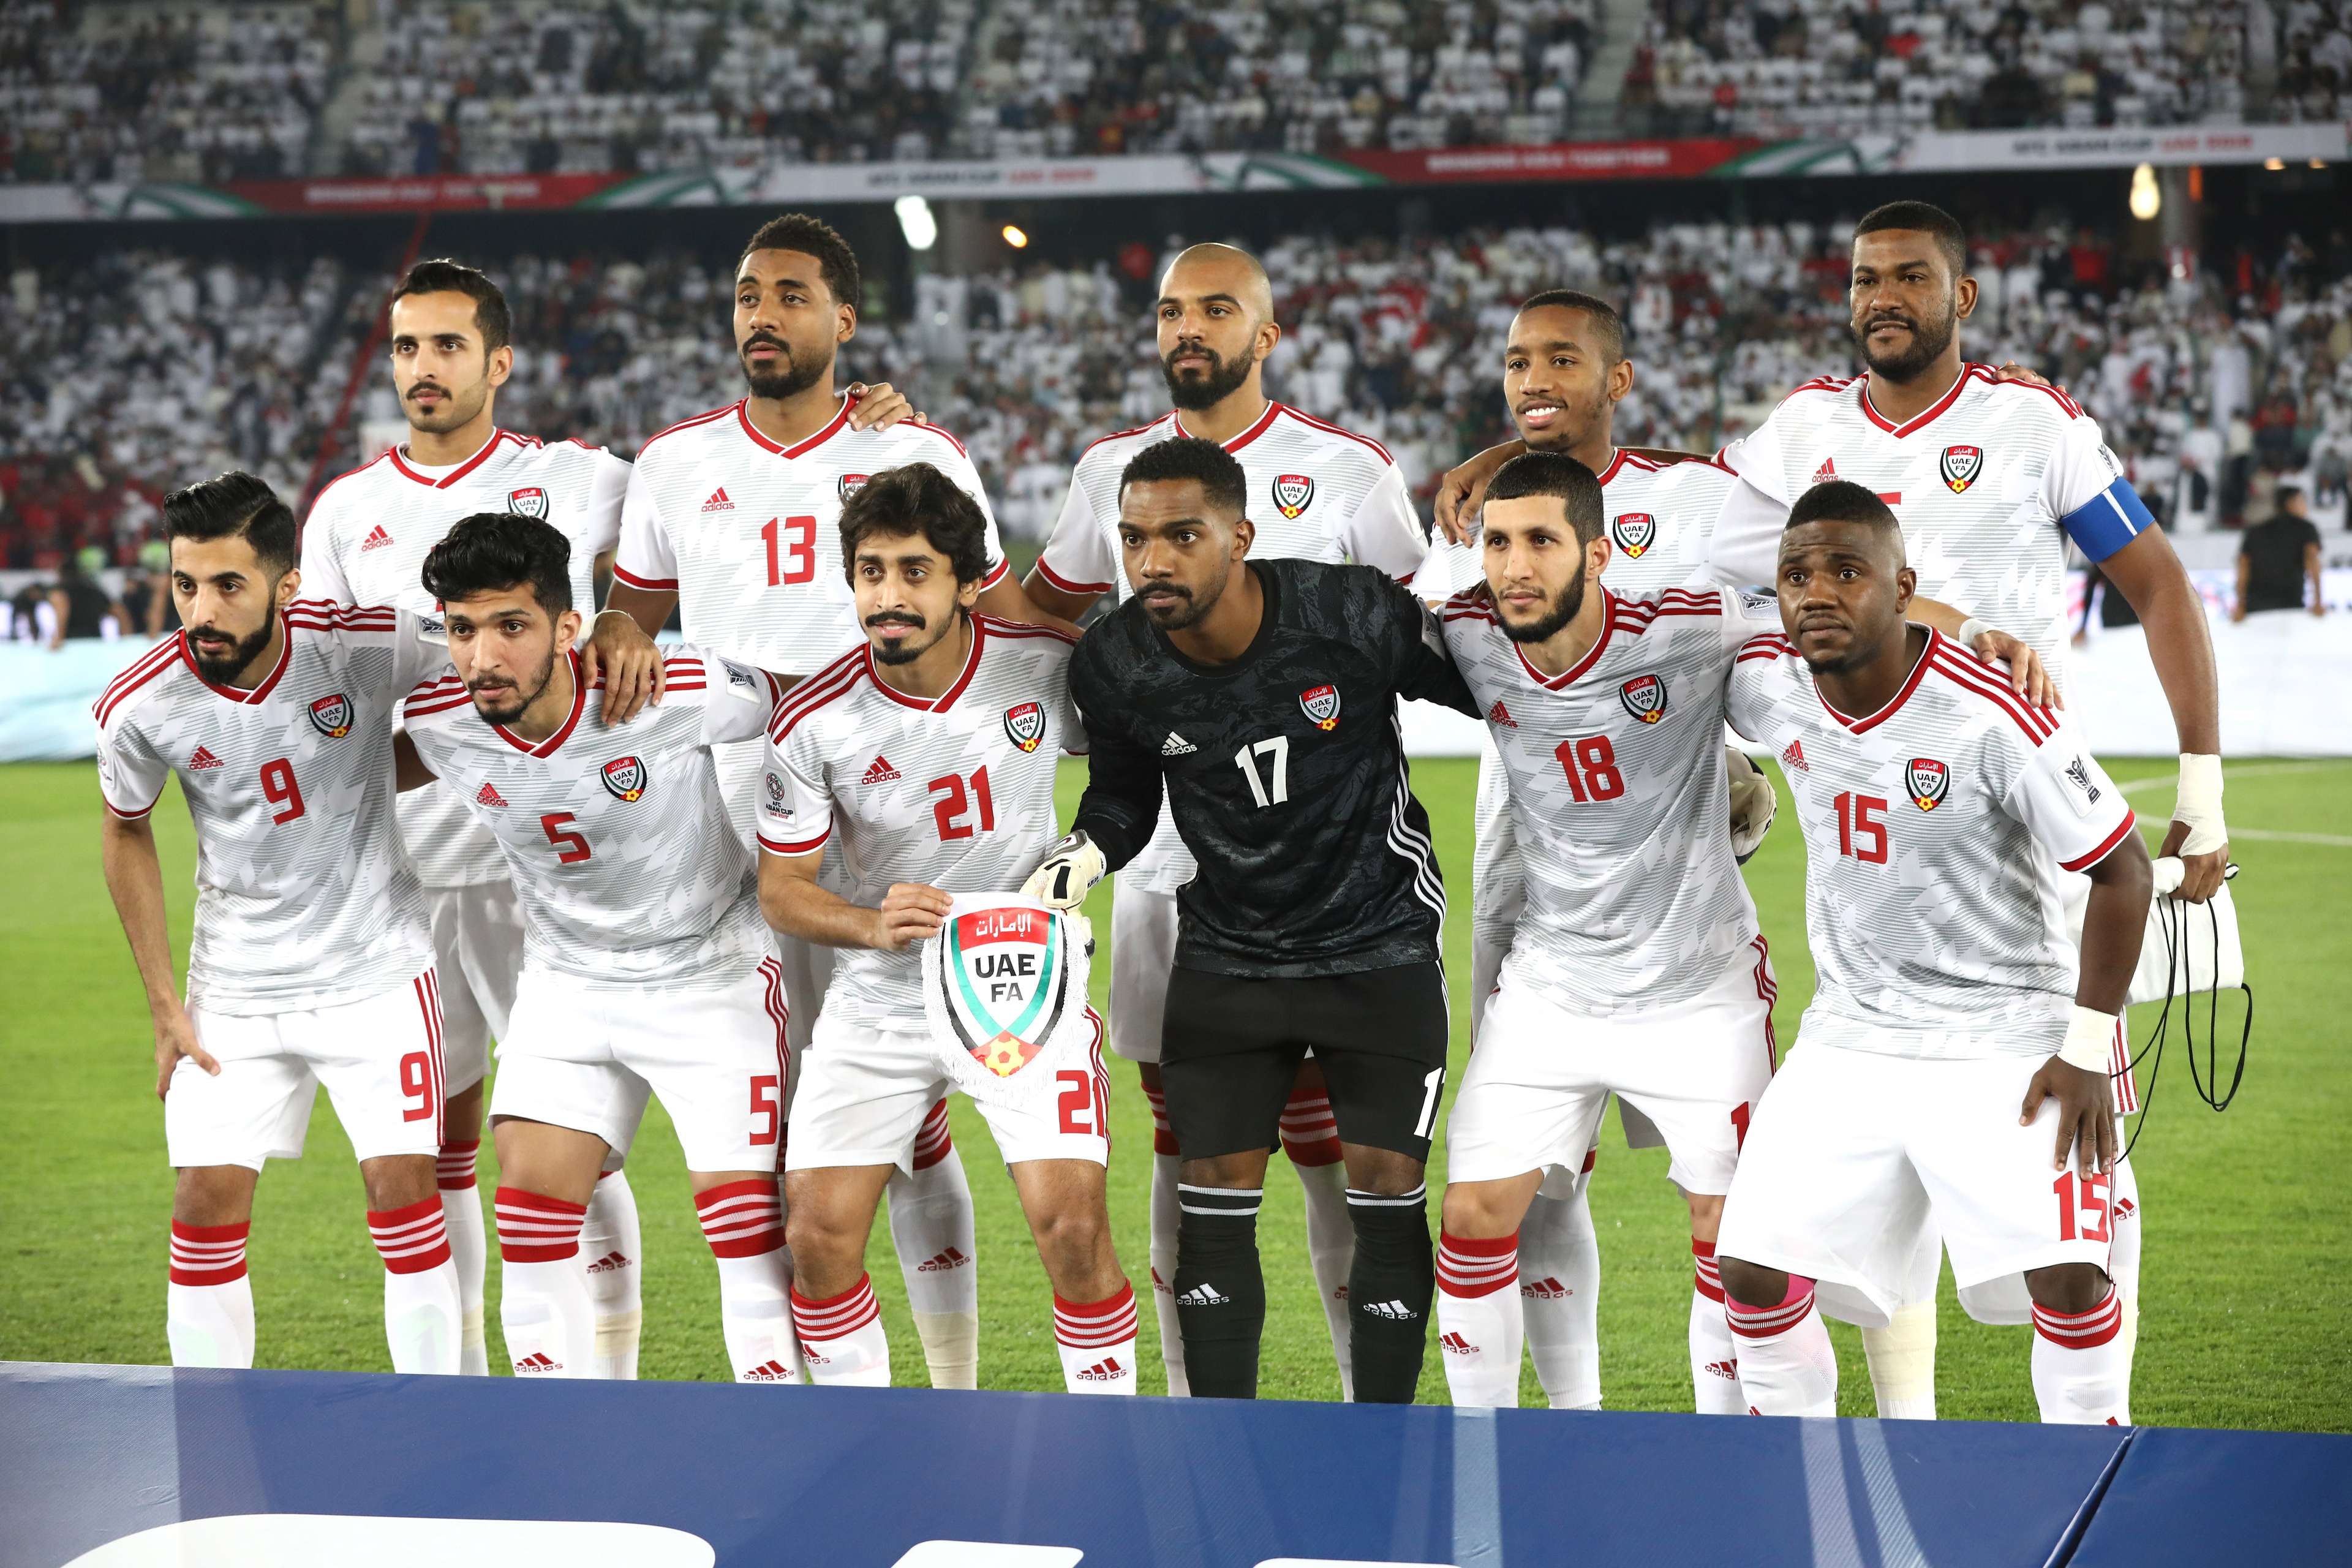 UAE AFC Asian Cup 2019